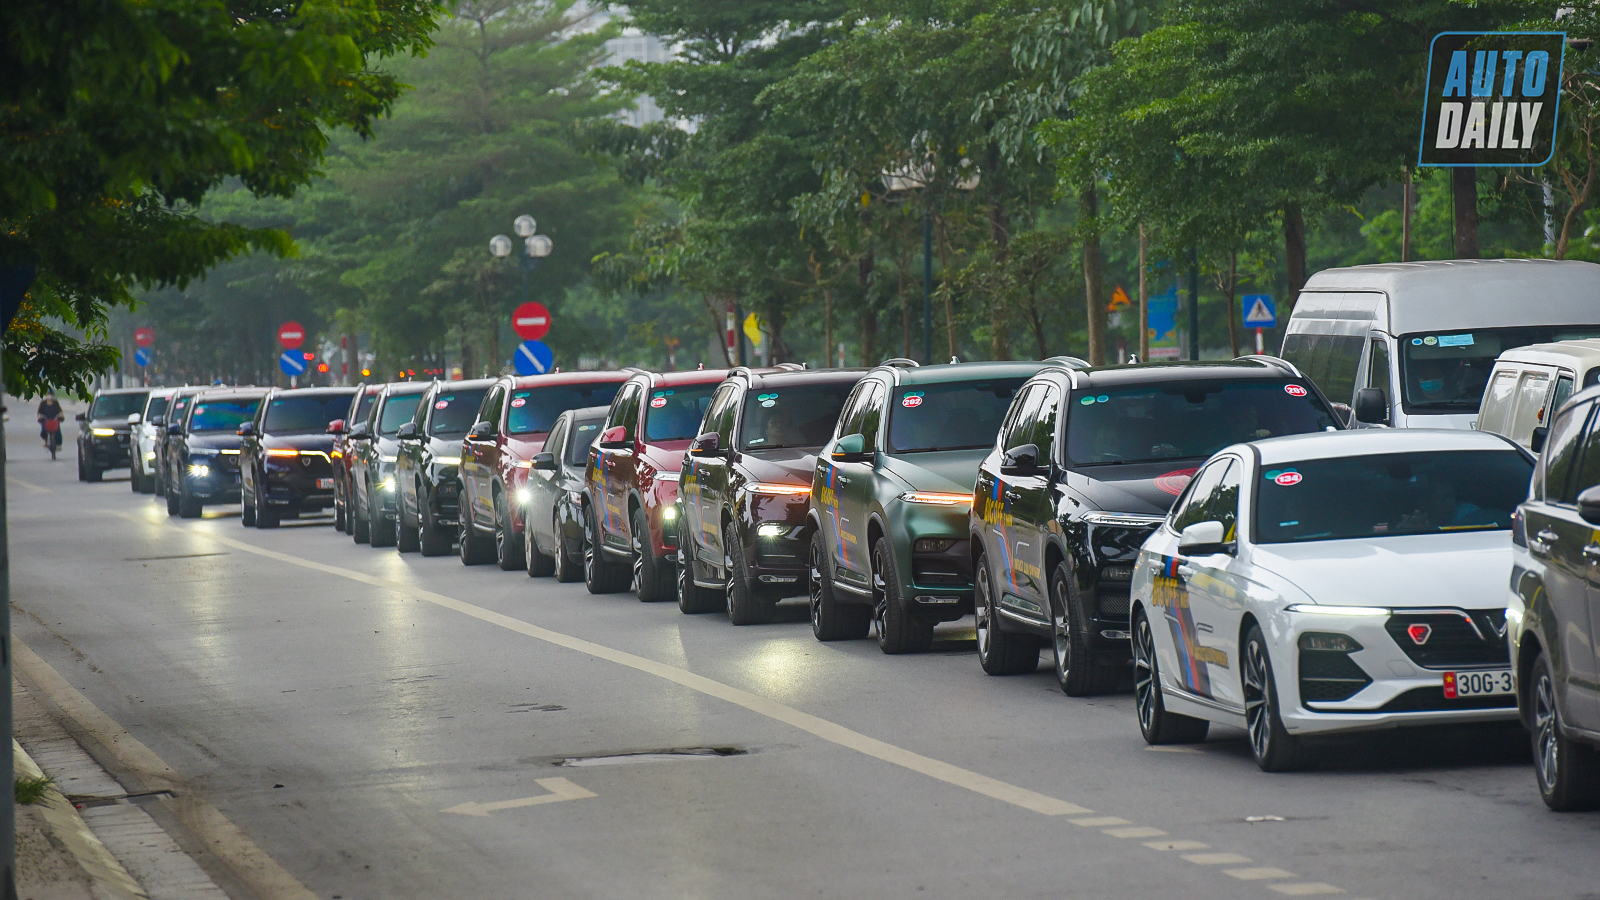 Chùm ảnh gần 60 xe VinFast Lux tại Hà Nội xuất phát Offline 3 miền tại Hội An dsc-6316-copy.jpg